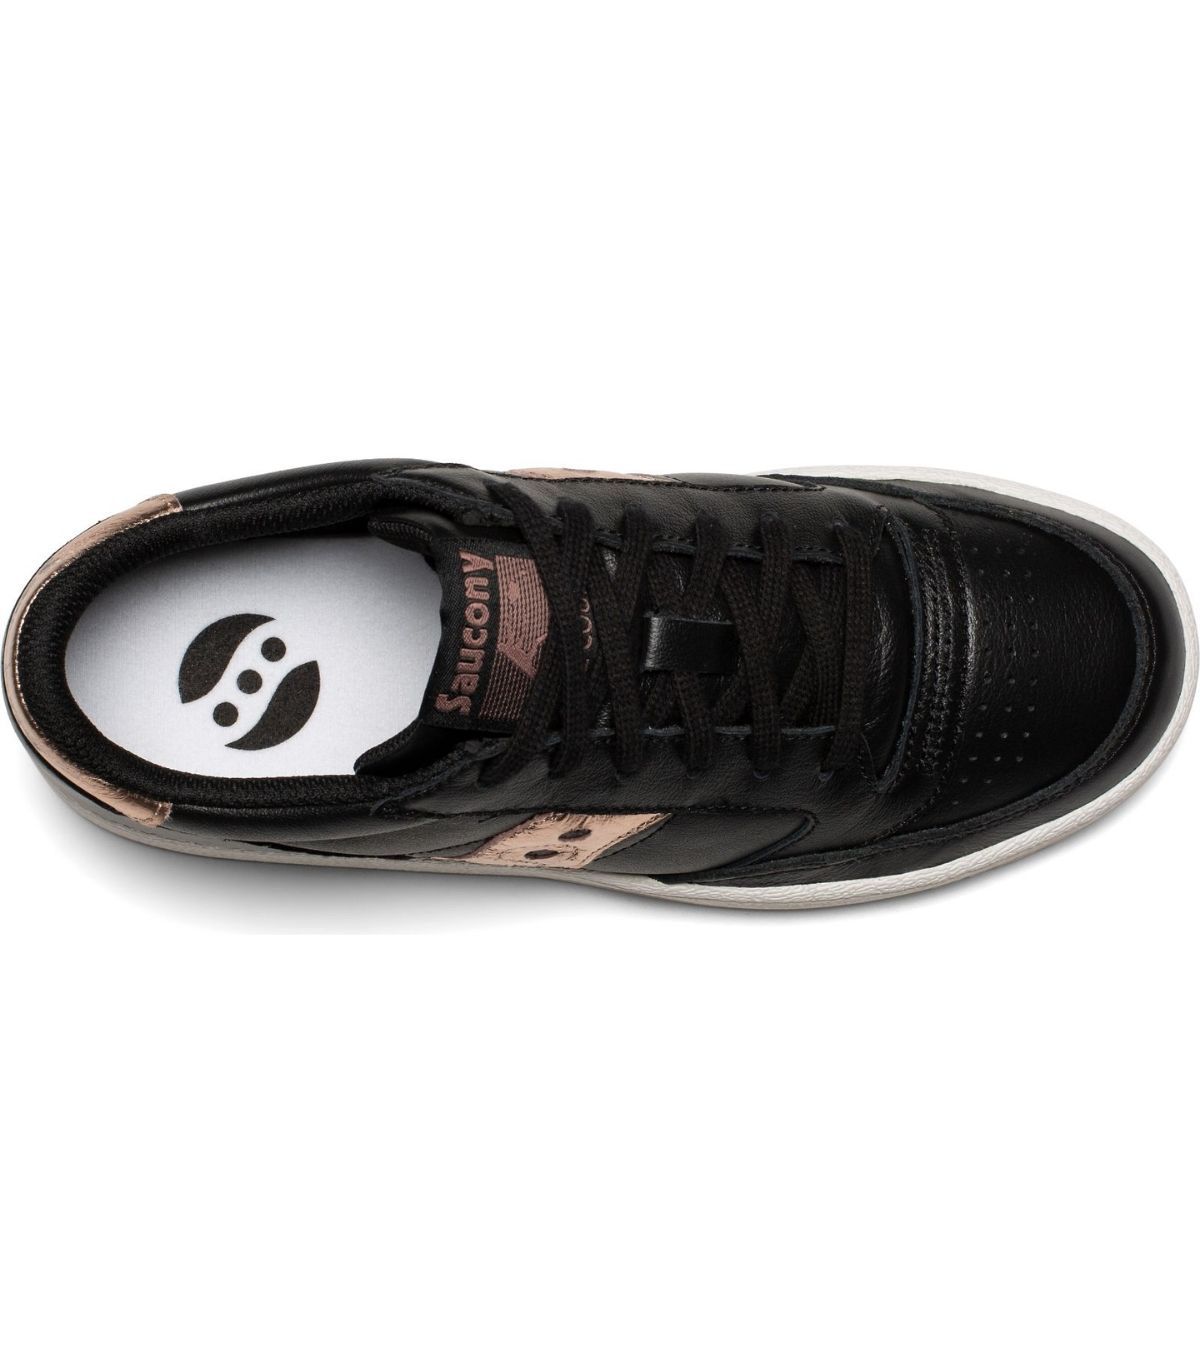 Sneakers Saucony hombre - Oferta de zapatillas de vestir casual para  comprar online